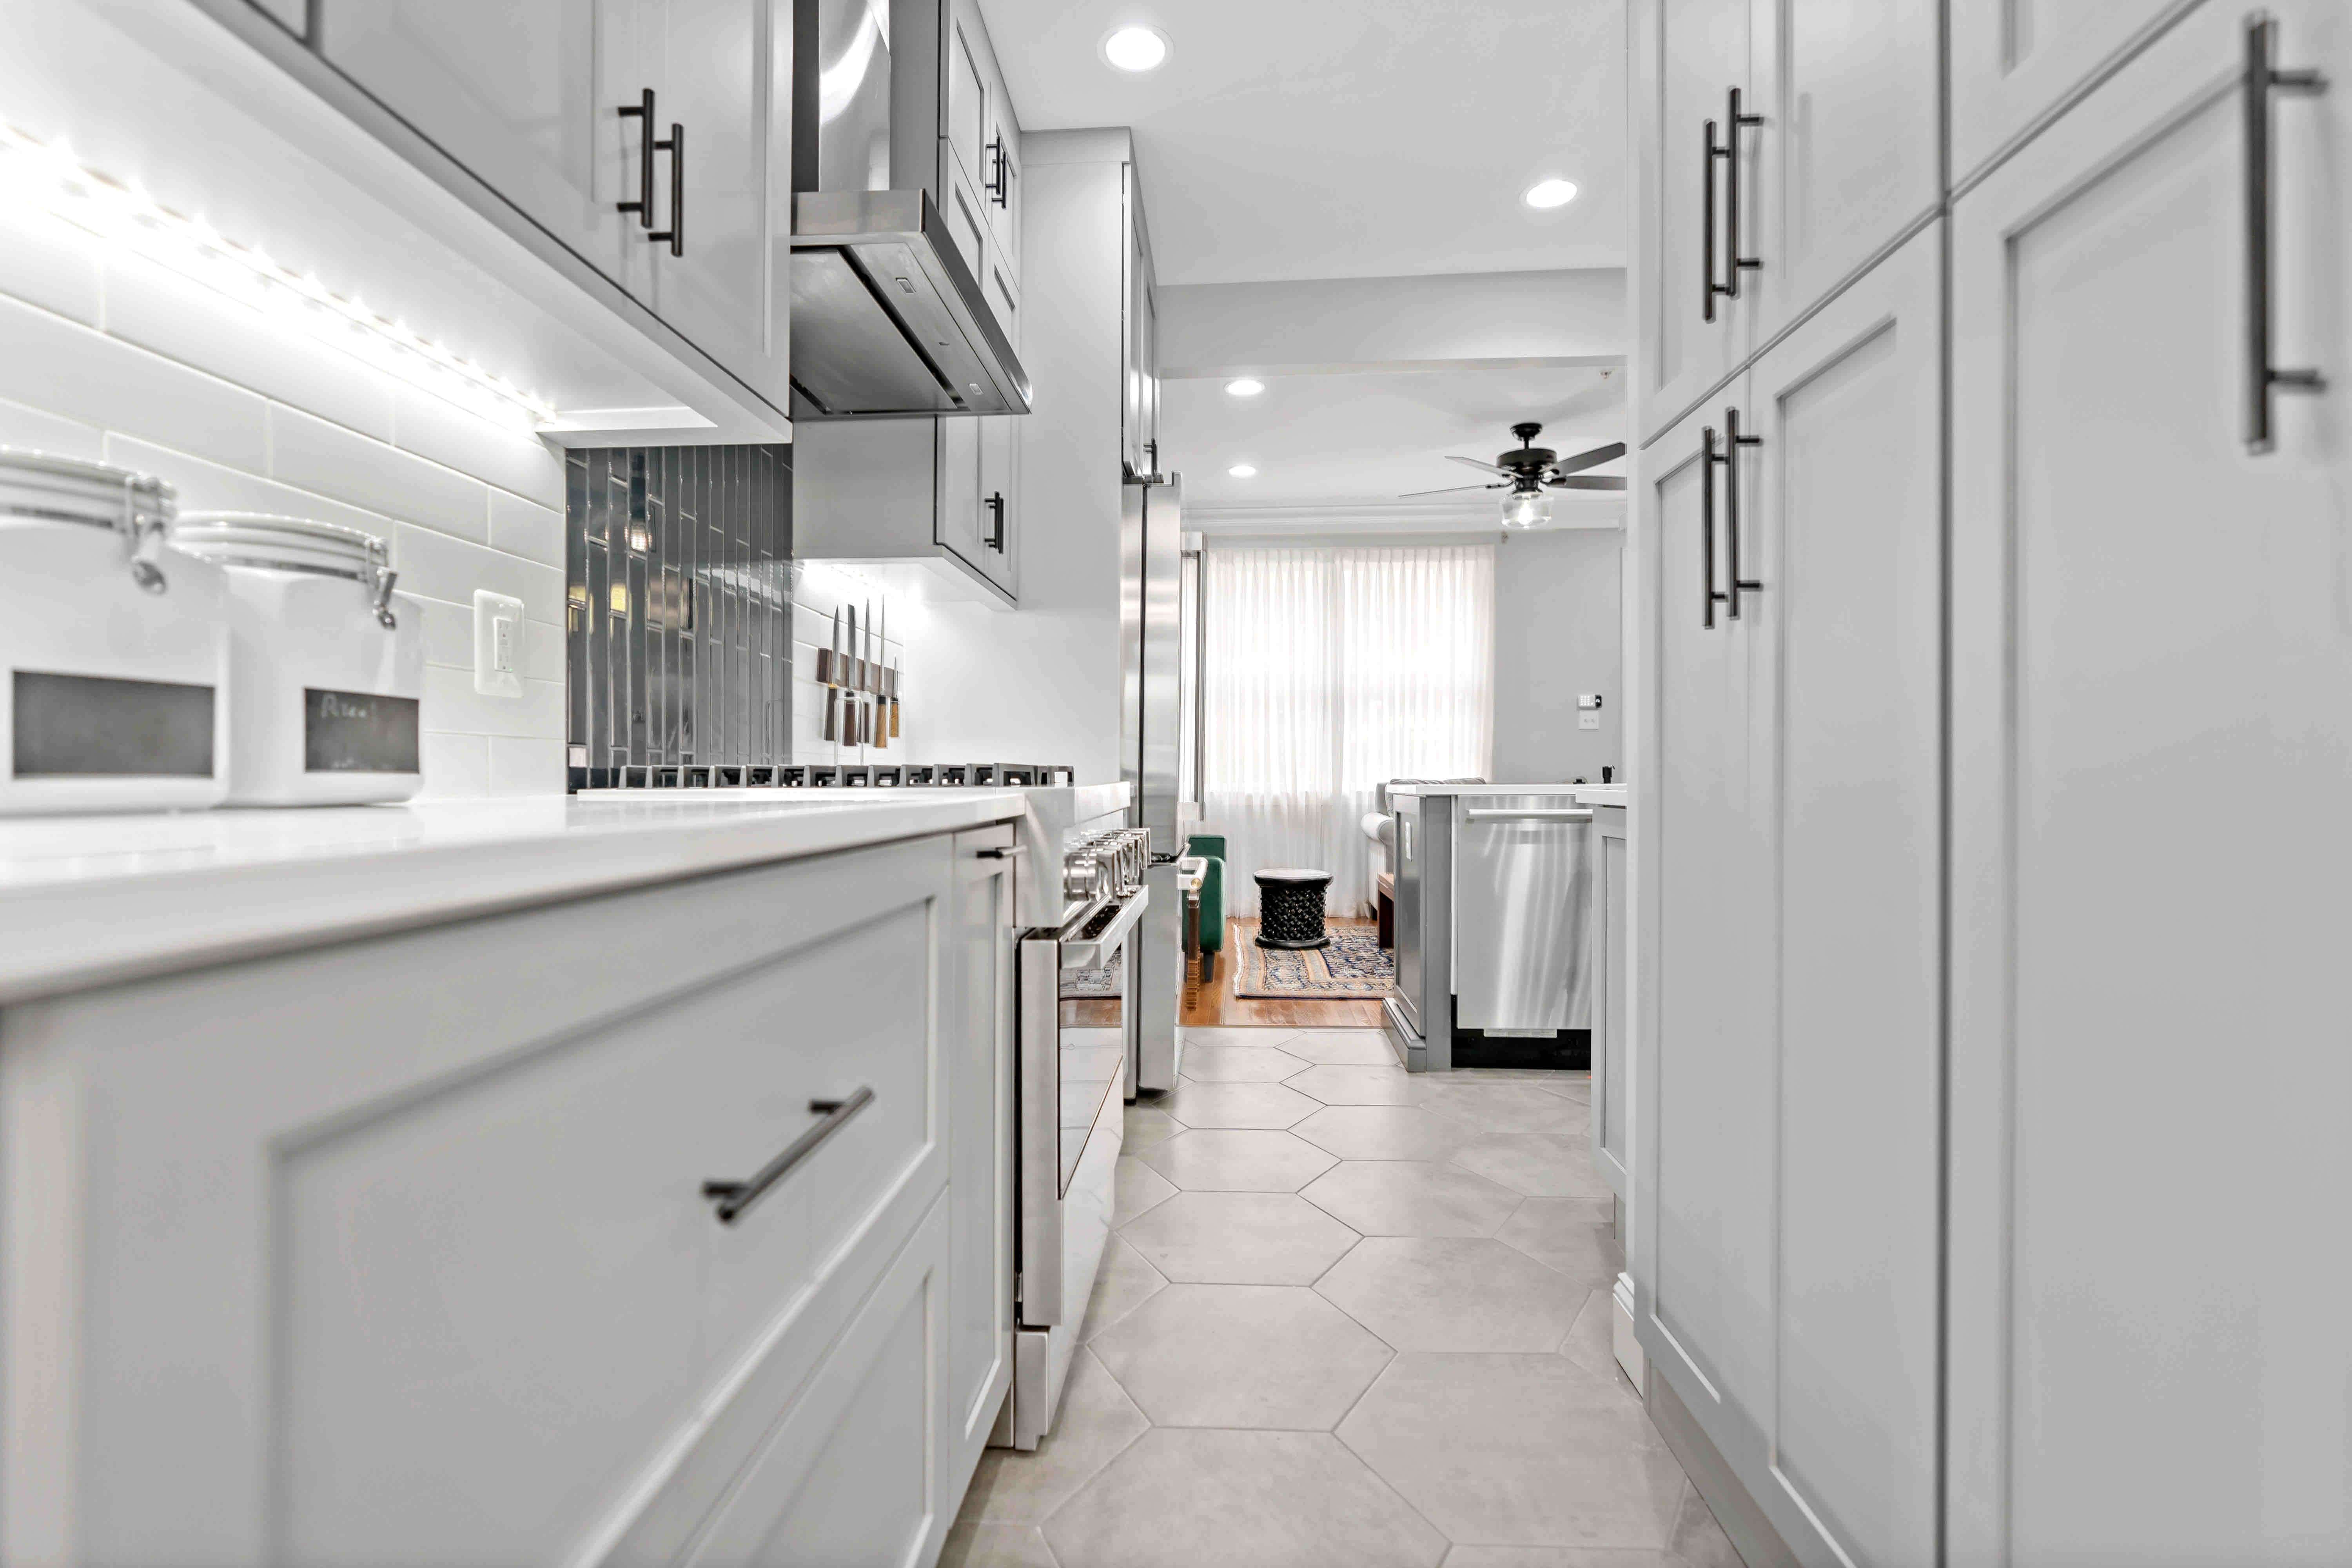 Light grey cabinets with dark grey handles in kitchen